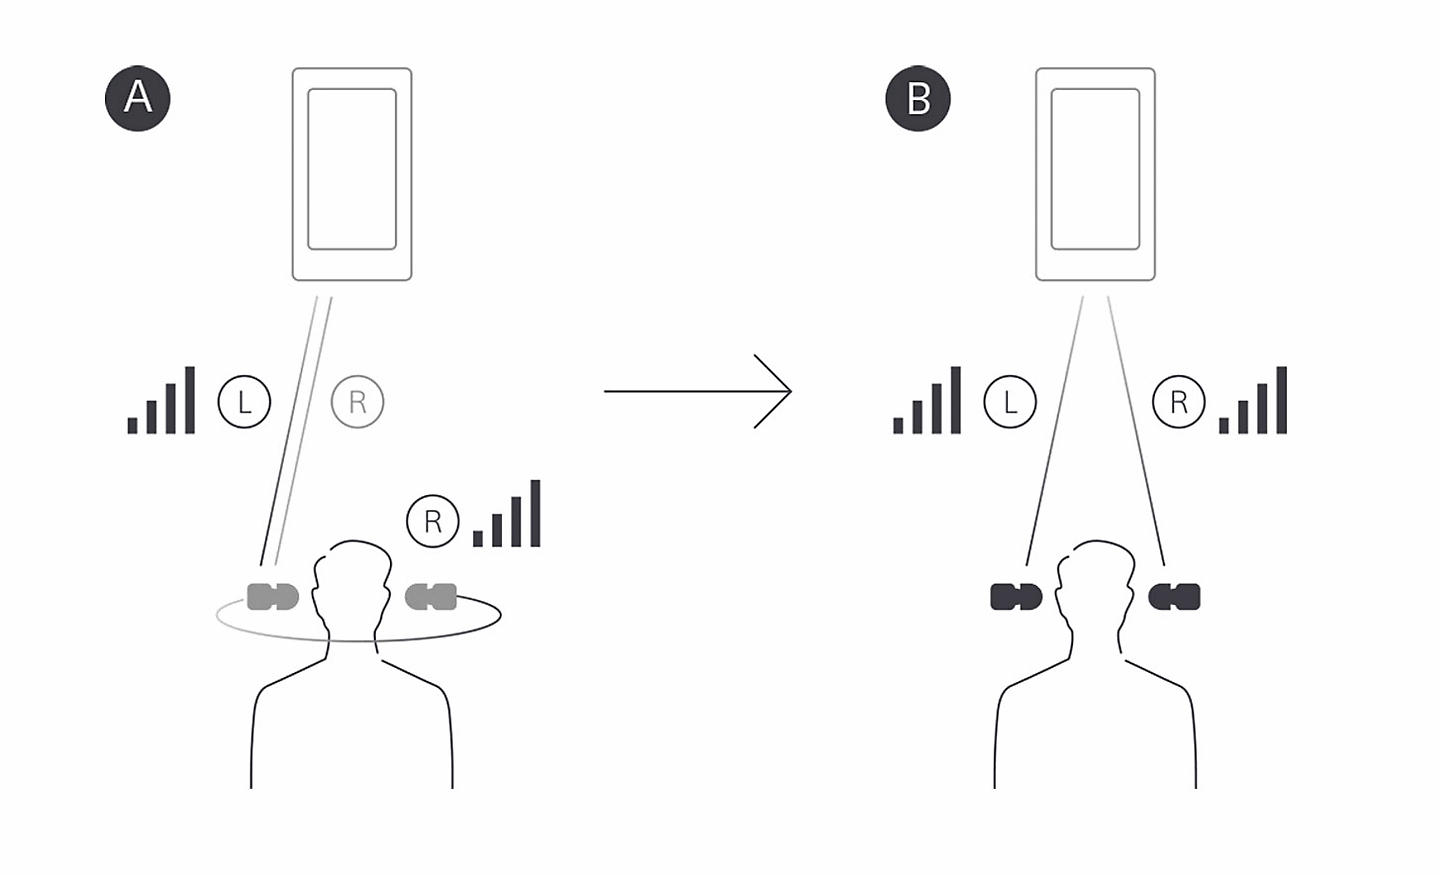 手機傳輸到頭部左側的圖像，旁邊是手機傳輸到頭部兩側的圖像